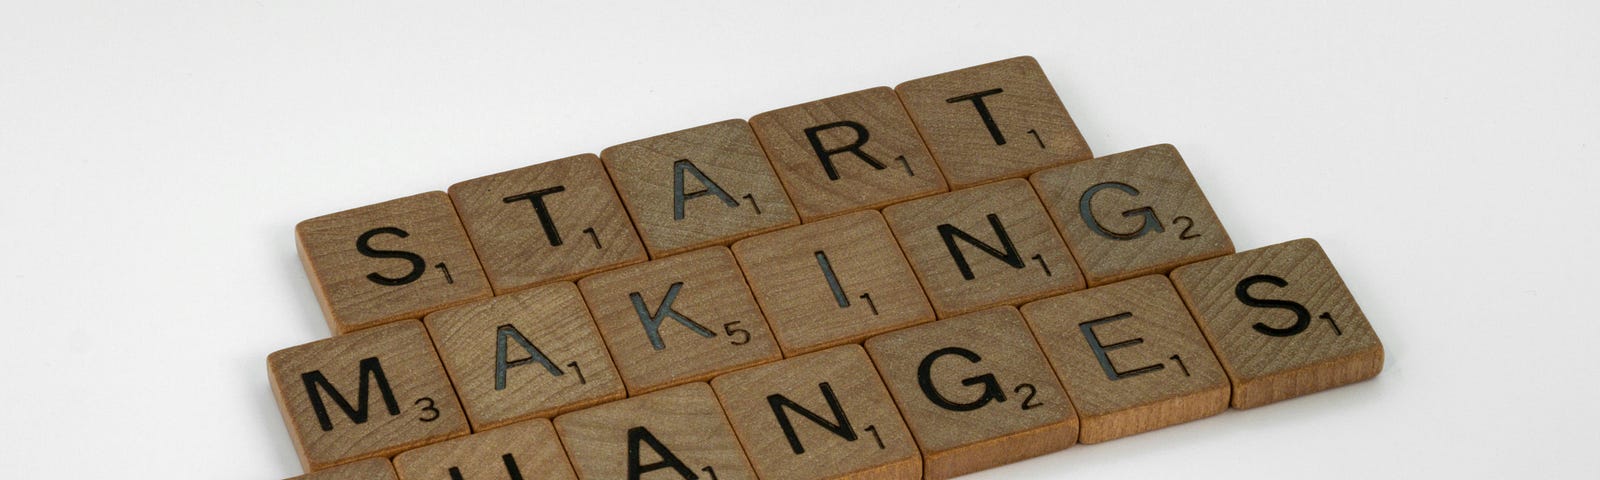 Scrabble tiles spell “Start Making Changes”.